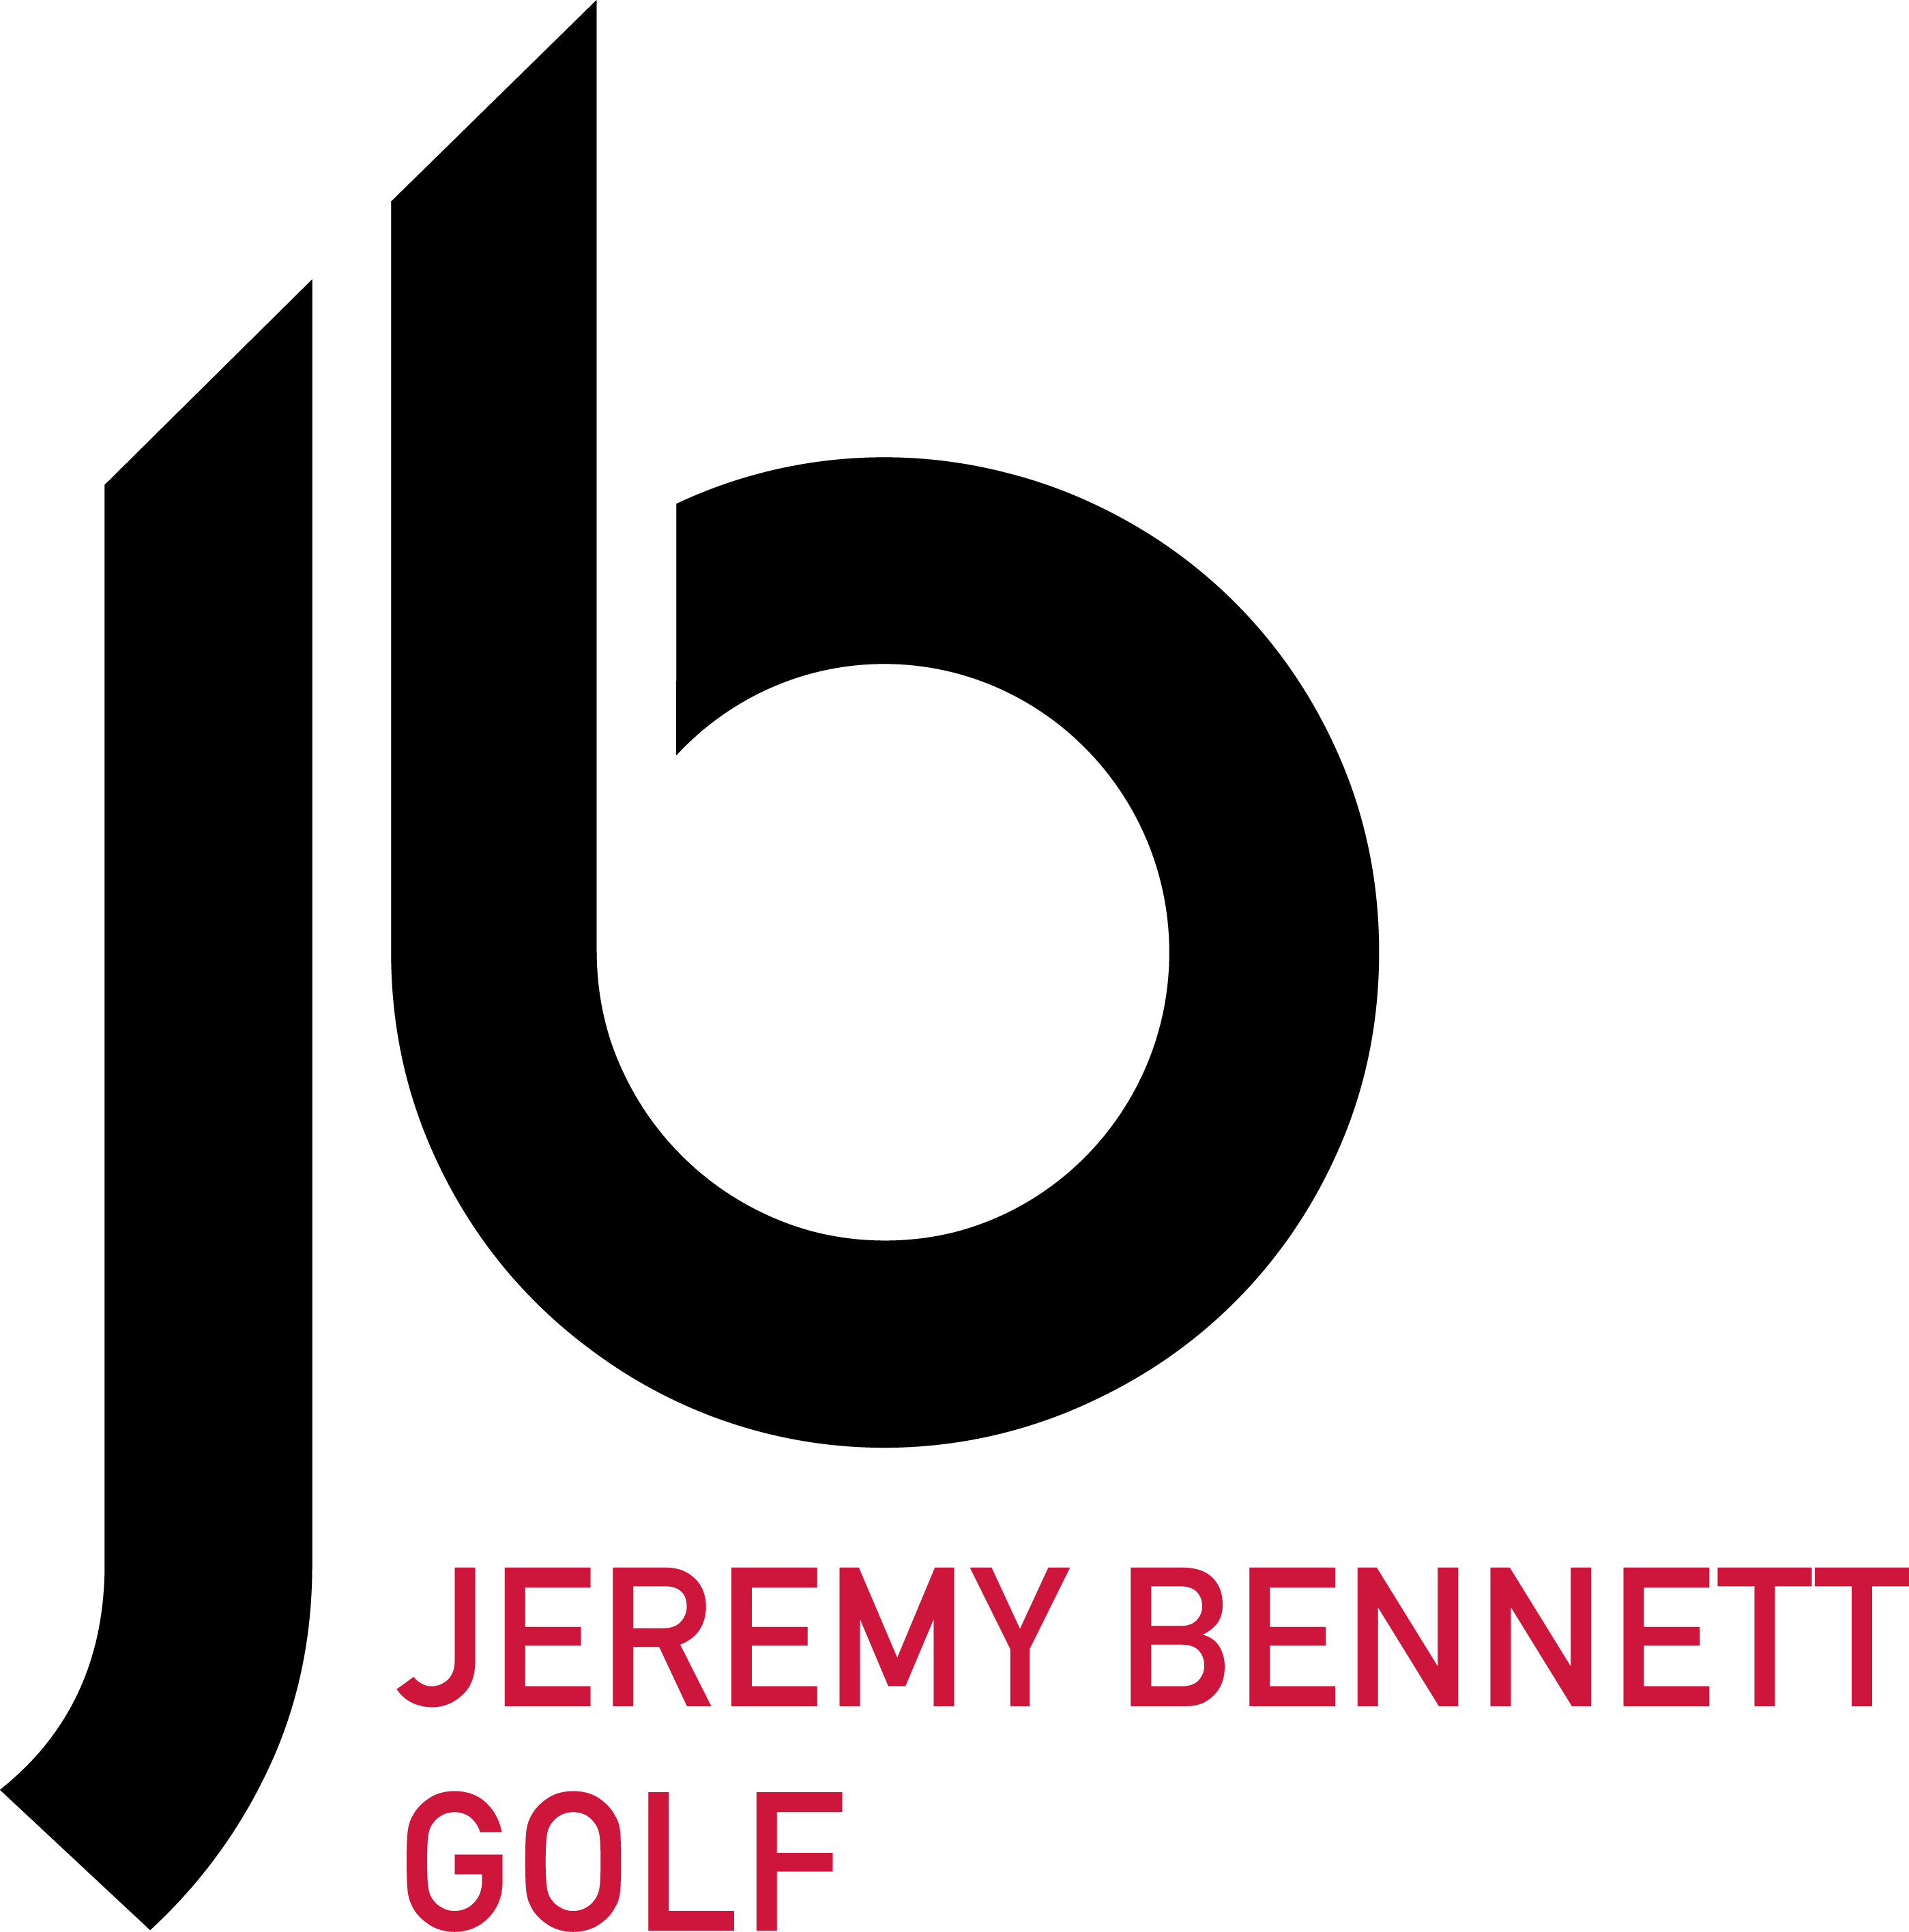 Jeremy Bennett, Professional Golf Coach - Golf Coach Logo Clipart (2798x2832), Png Download